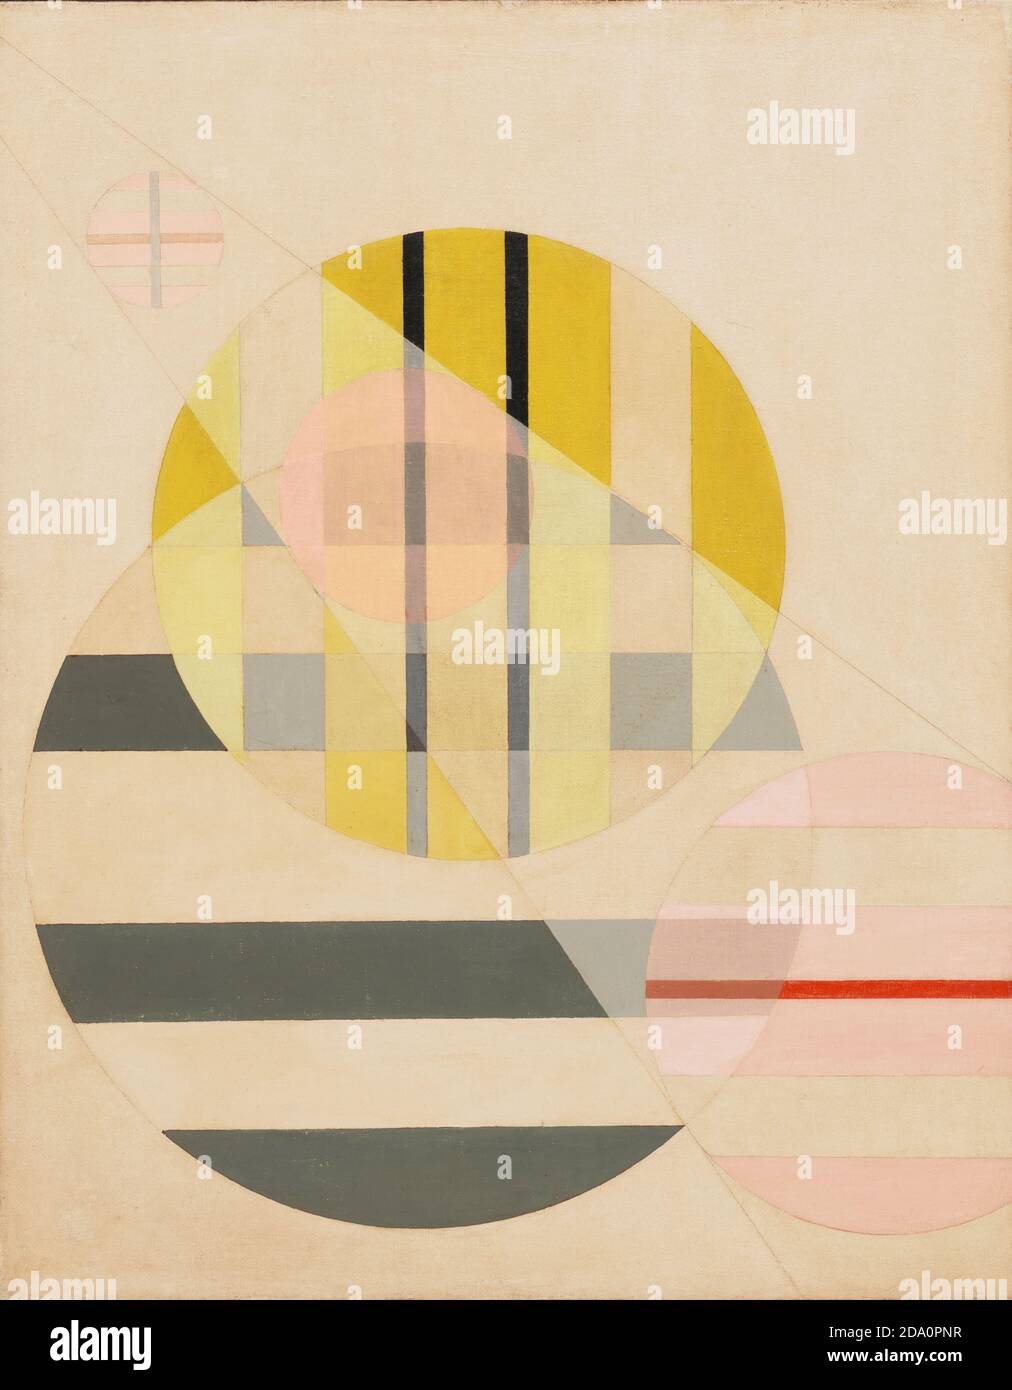 László Moholy-Nagy. (American, born Hungary. 1895-1946). Z II. 1925. Oil on canvas. Stock Photo